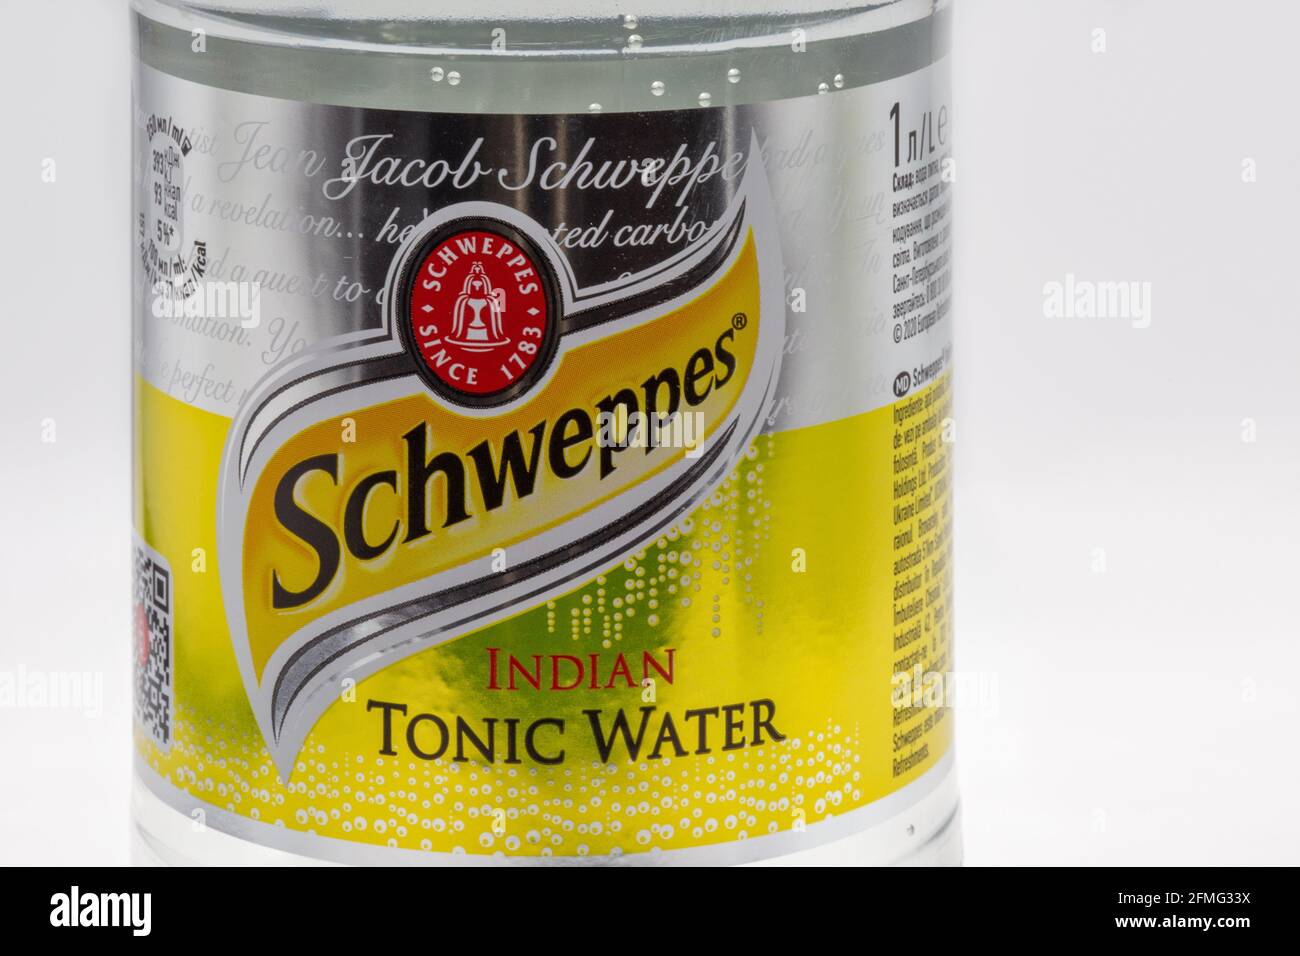 KIEV, UCRAINA - 27 MARZO 2021: Schweppes indiano tonico acqua bottiglia originale di plastica etichetta closeup su sfondo bianco. Schweppes è una colomba svizzera Foto Stock